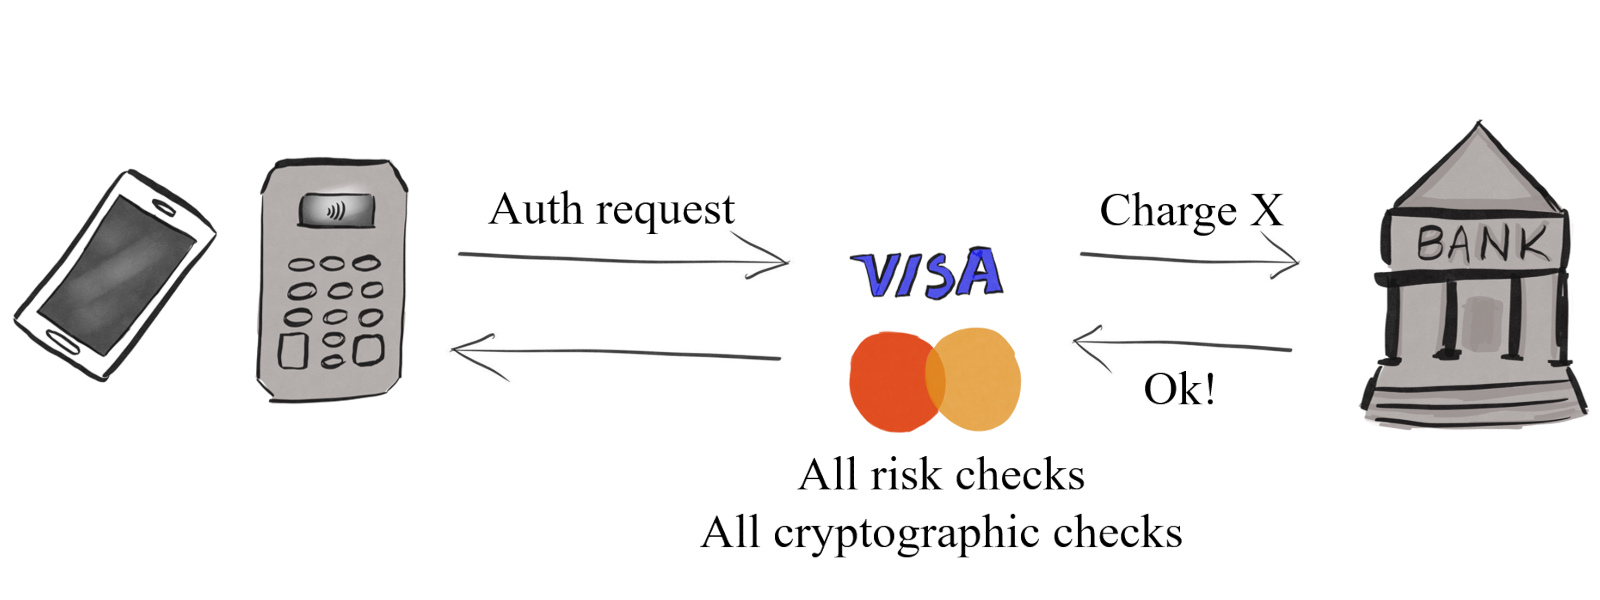 Transaction involving a digital wallet